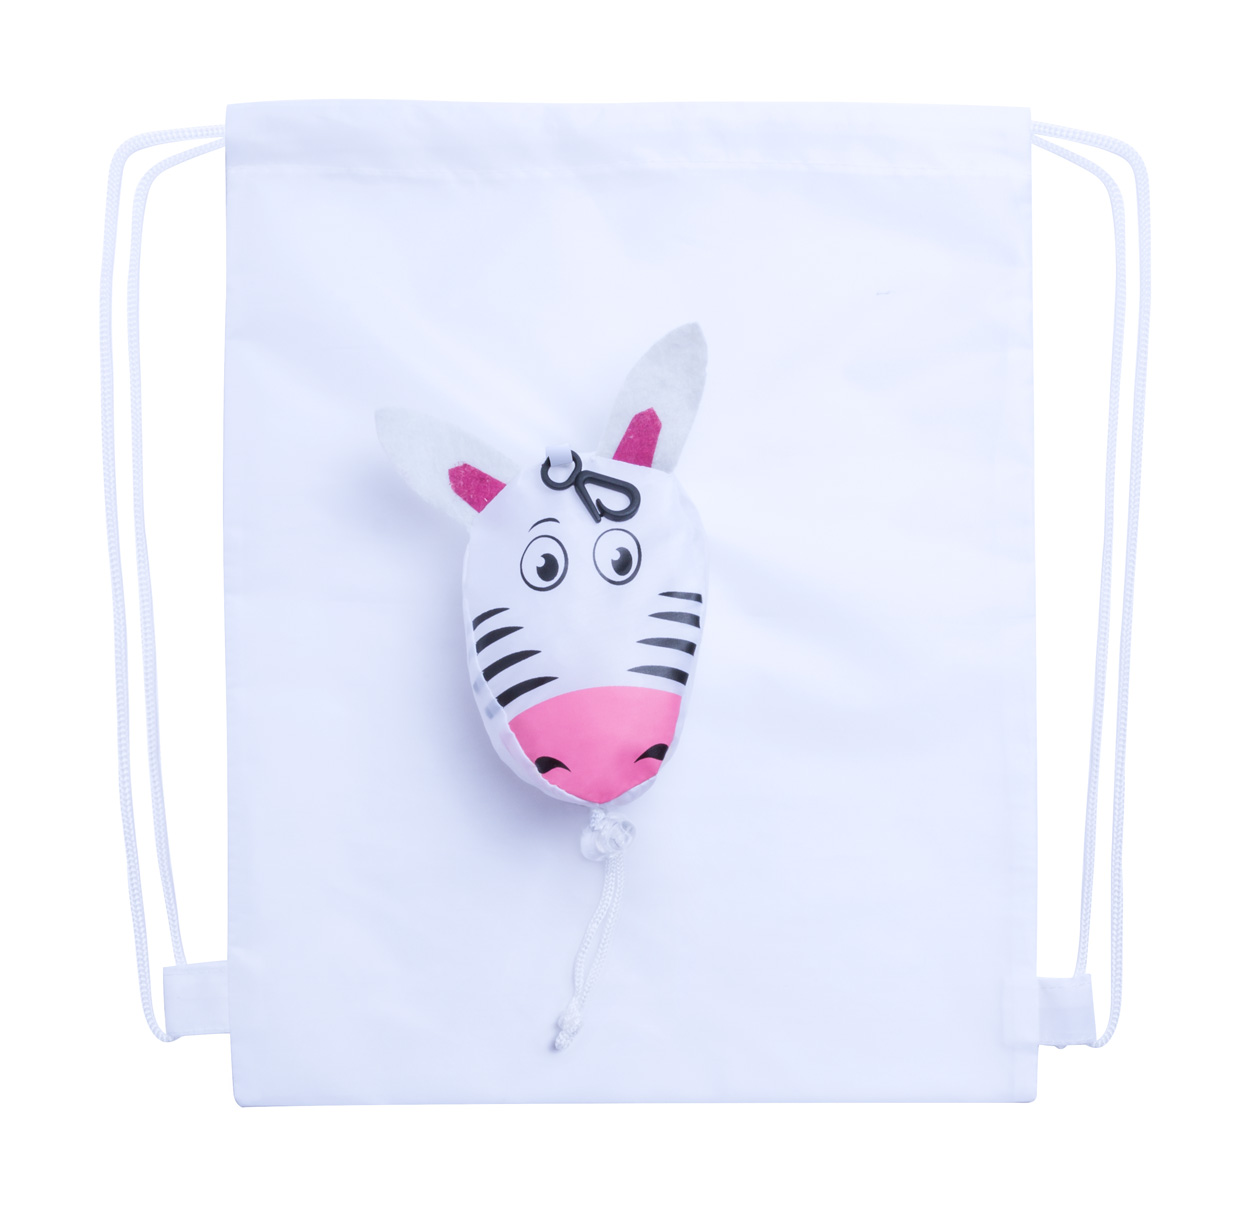 Promo  Kissa, dječja sklopiva torbica s uzorkom zebre, bijele boje